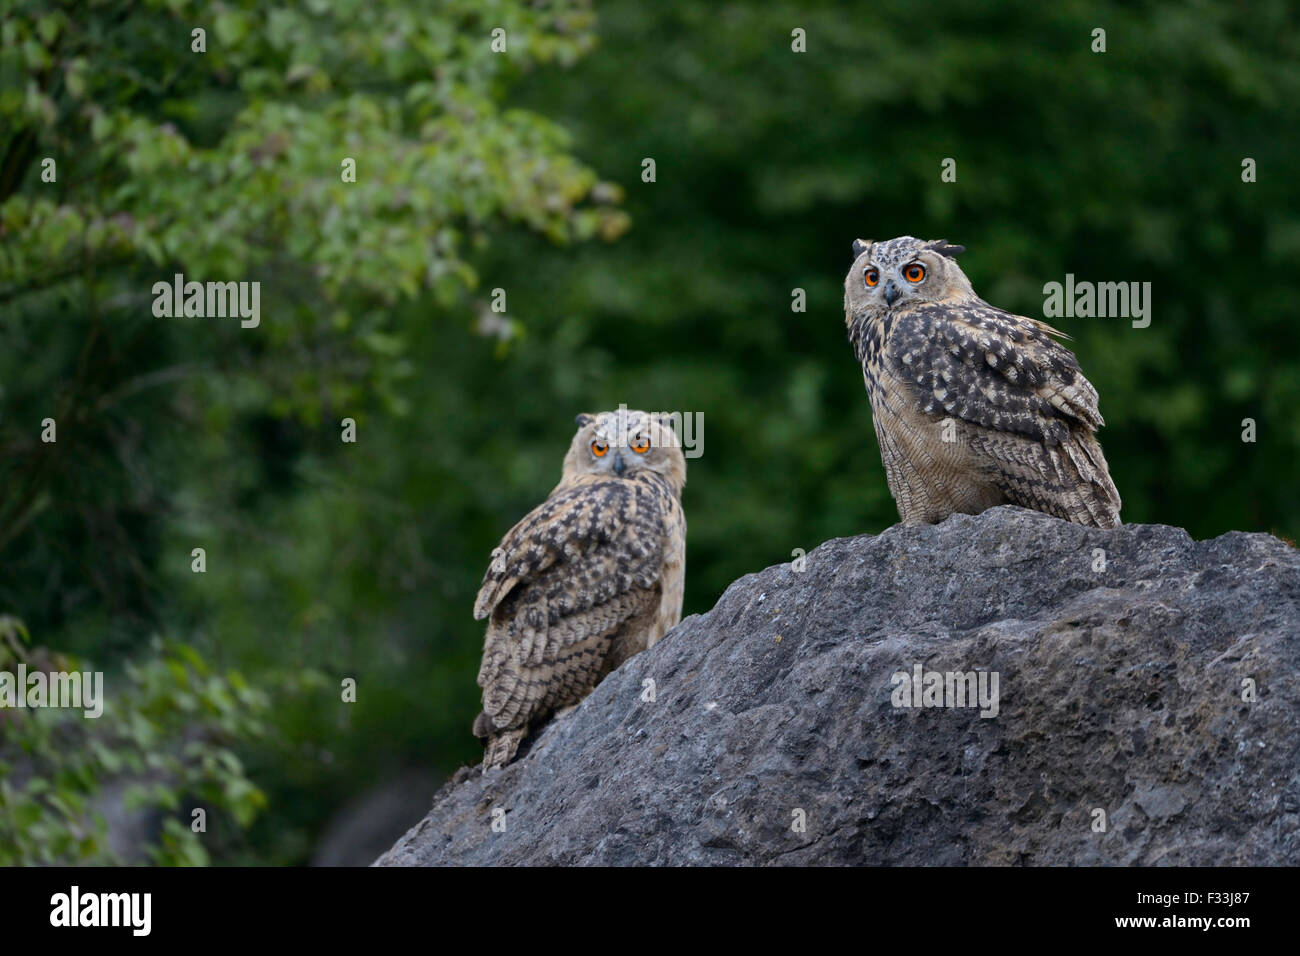 Deux wild Eagle hiboux du Nord / Europäische Uhus ( Bubo bubo ) assis à côté de l'autre sur un énorme rocher avec buissons verts autour de Banque D'Images